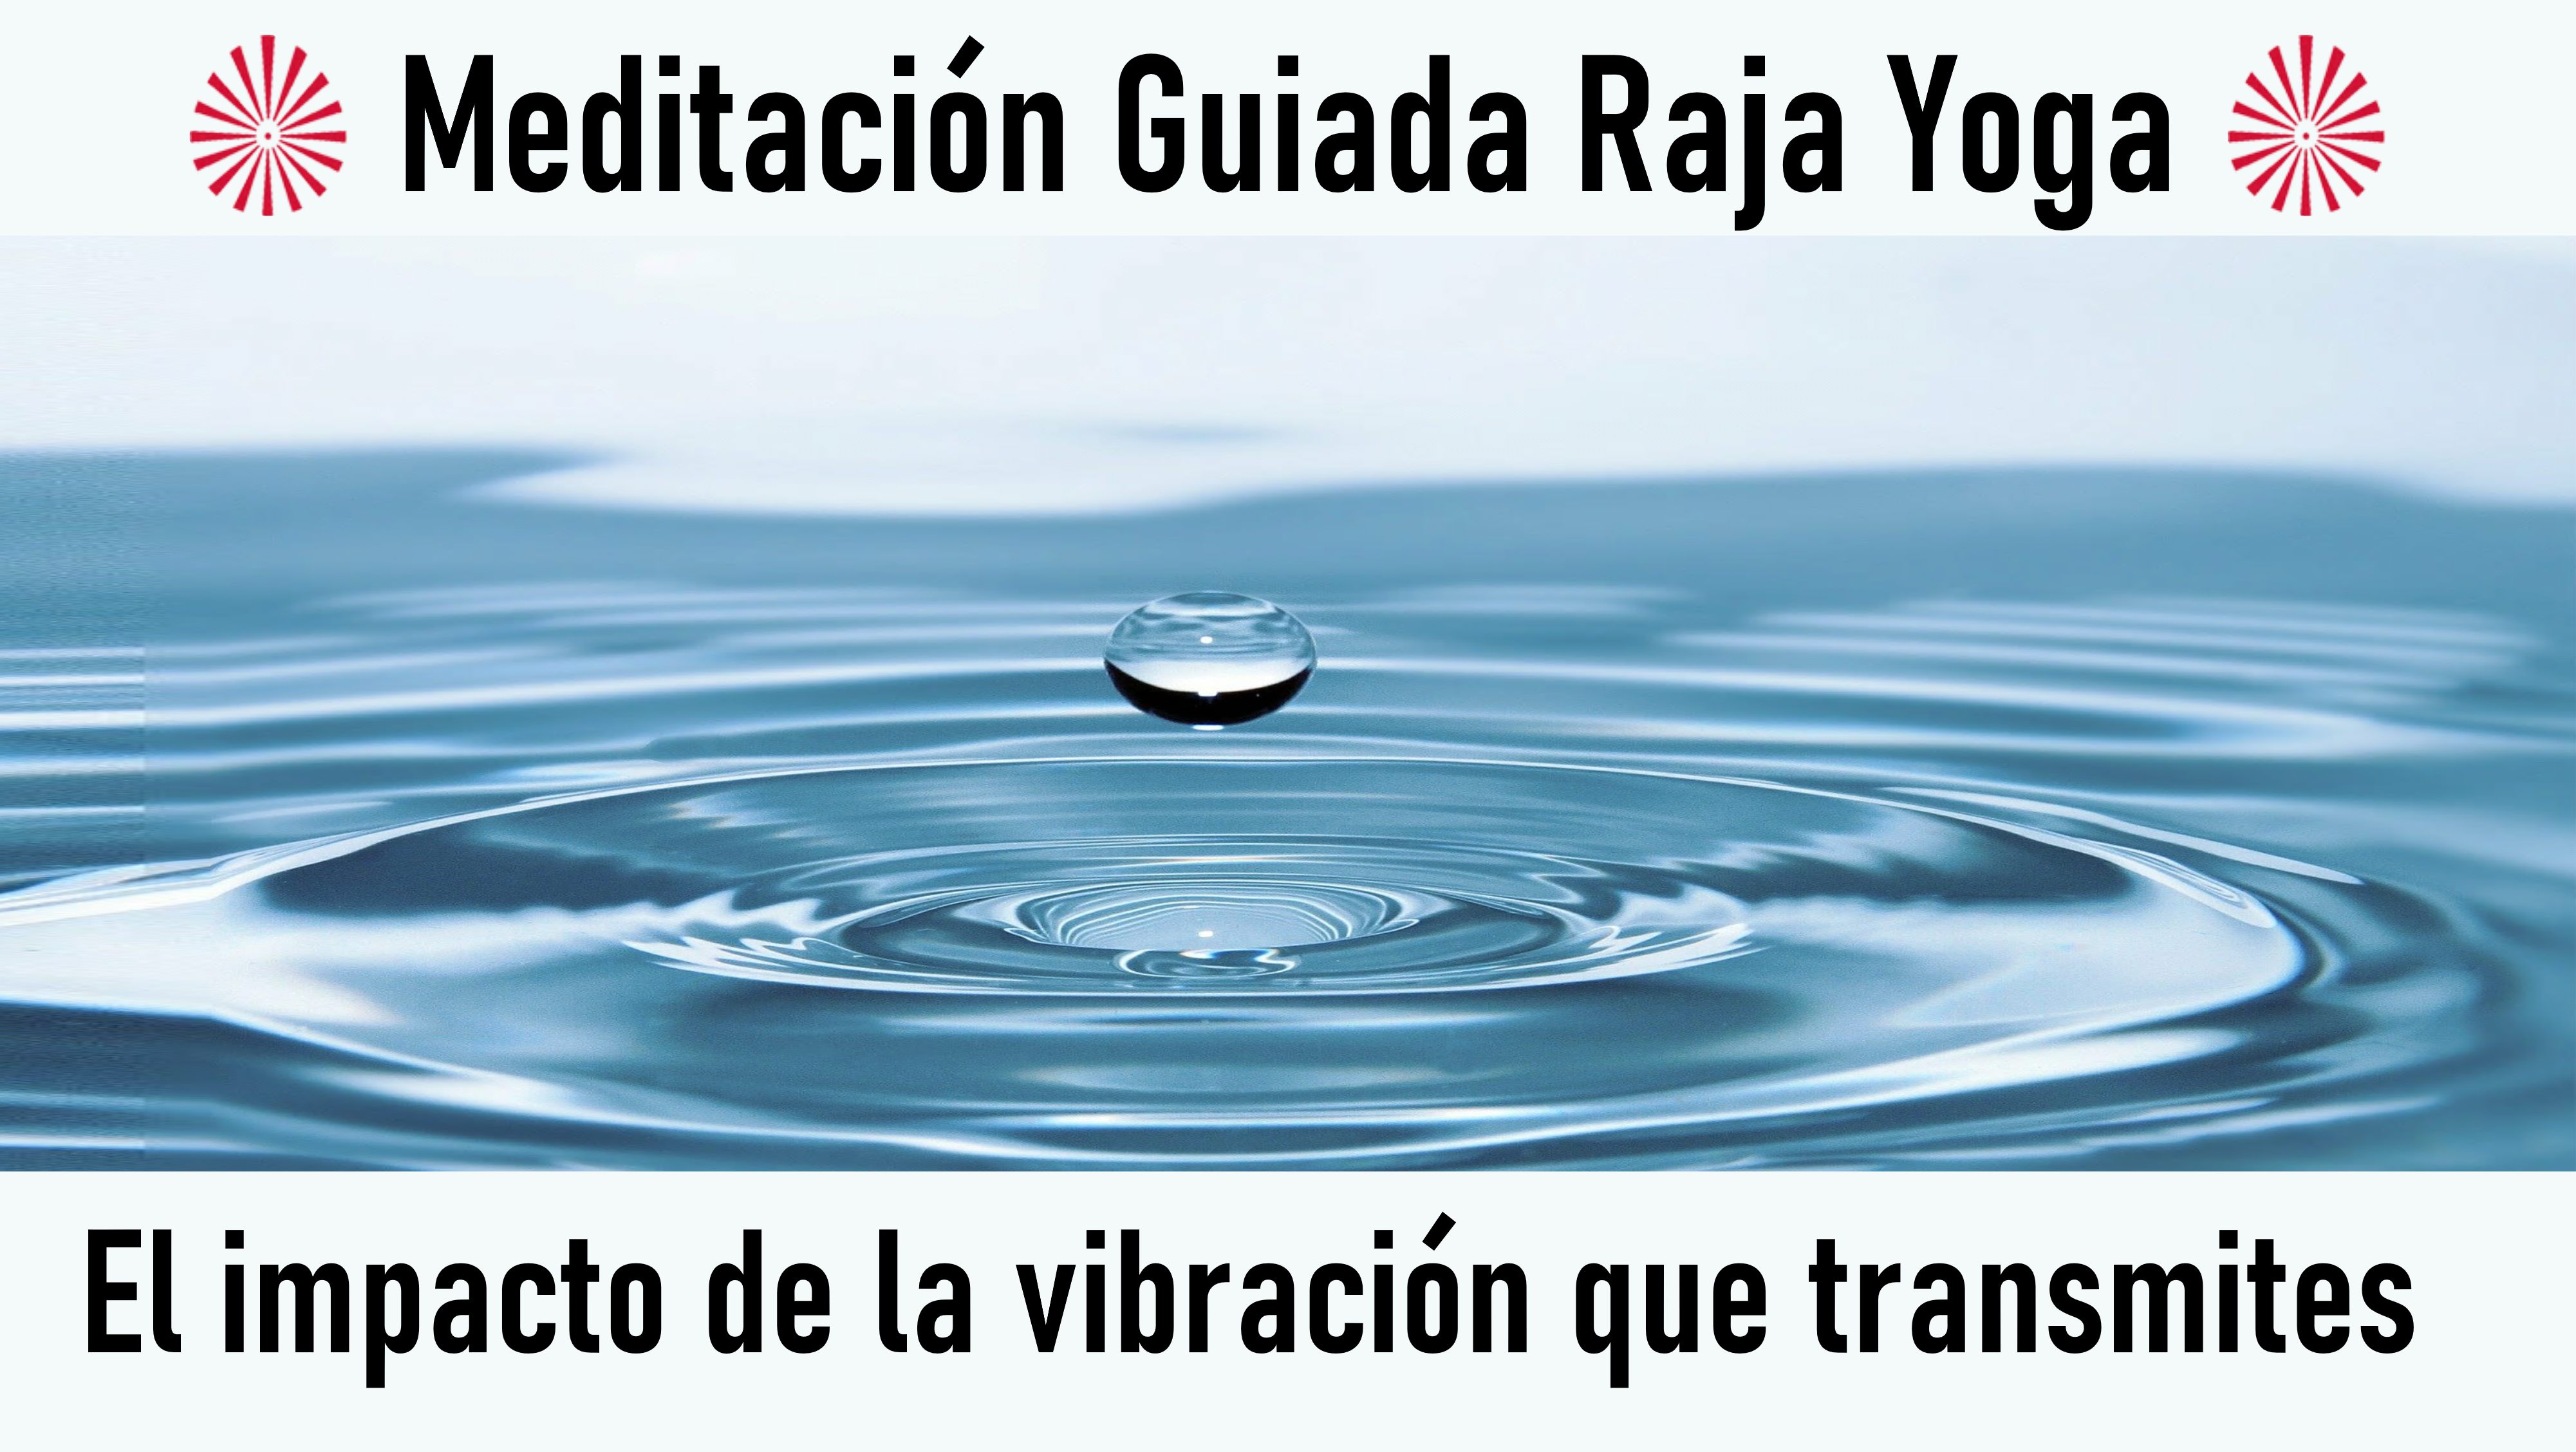 23 Julio 2020 Meditación guiada: El impacto de la vibración que transmites